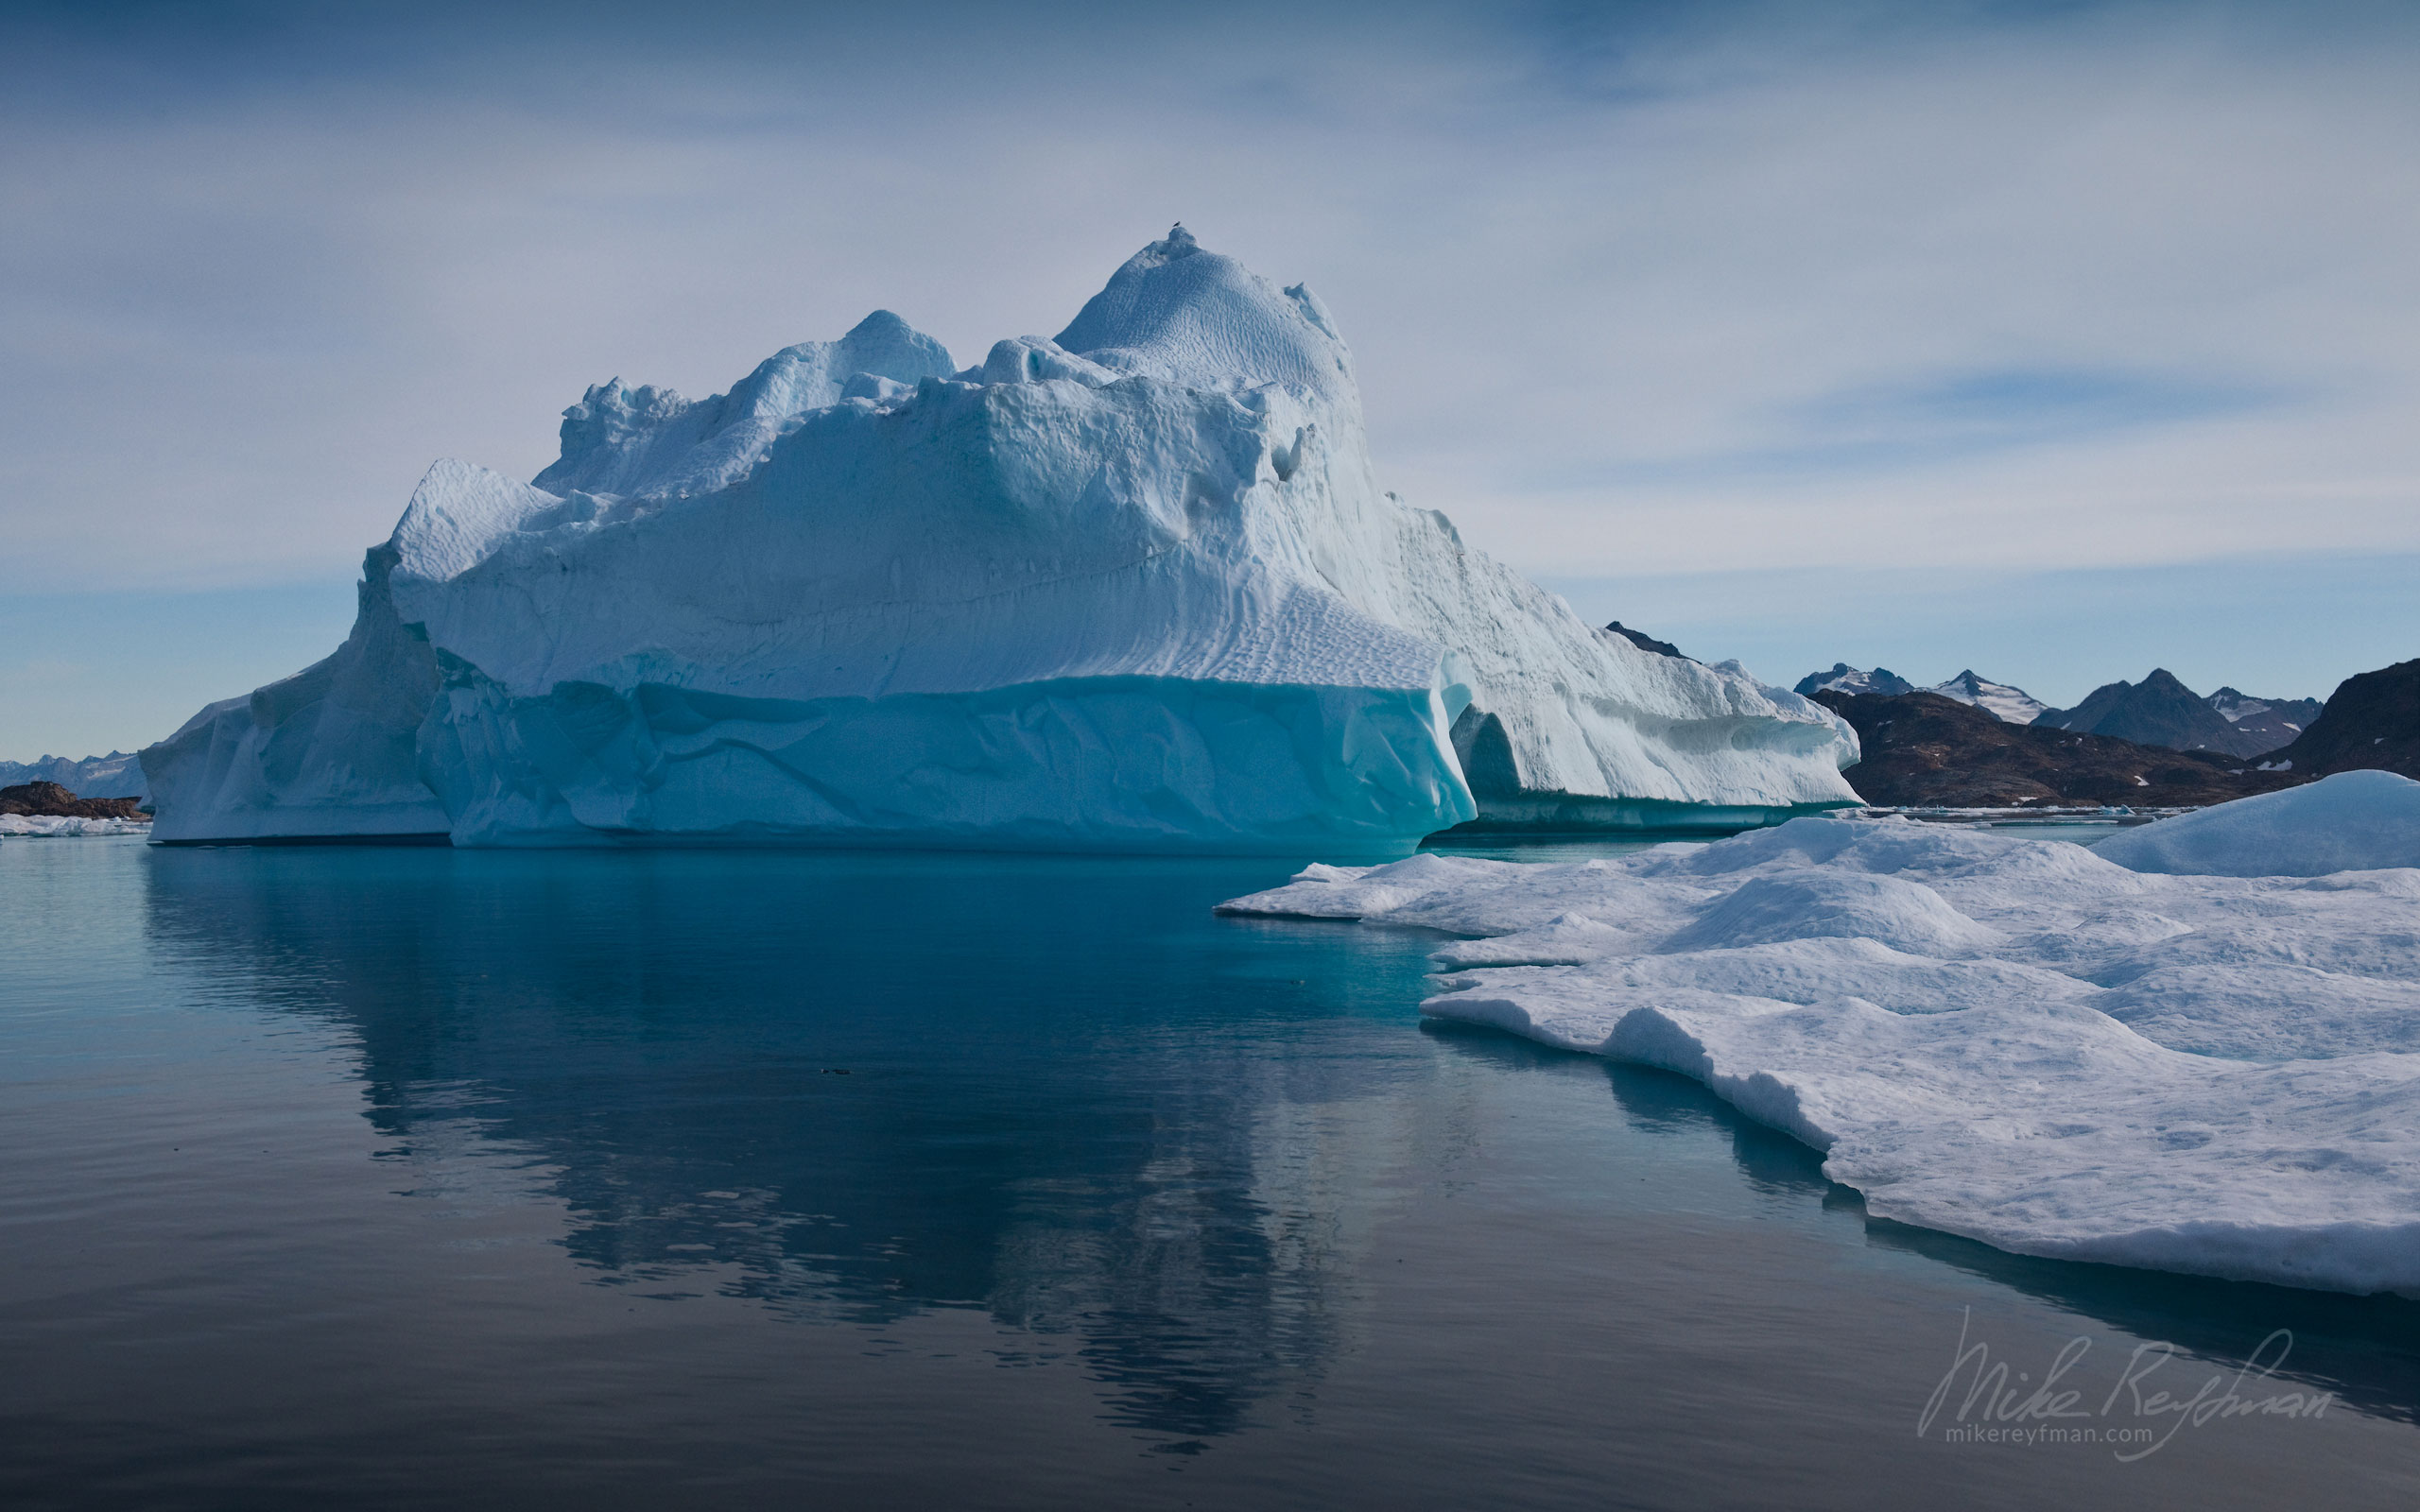 Huge iceberg offshore of Kulusuk island. Southeastern Greenland. 024-GR-KU_P3X5087 - Kulusuk island, Ammassalik Fjord & Torsuut Tunoq Sound. Southeastern Greenland - Mike Reyfman Photography